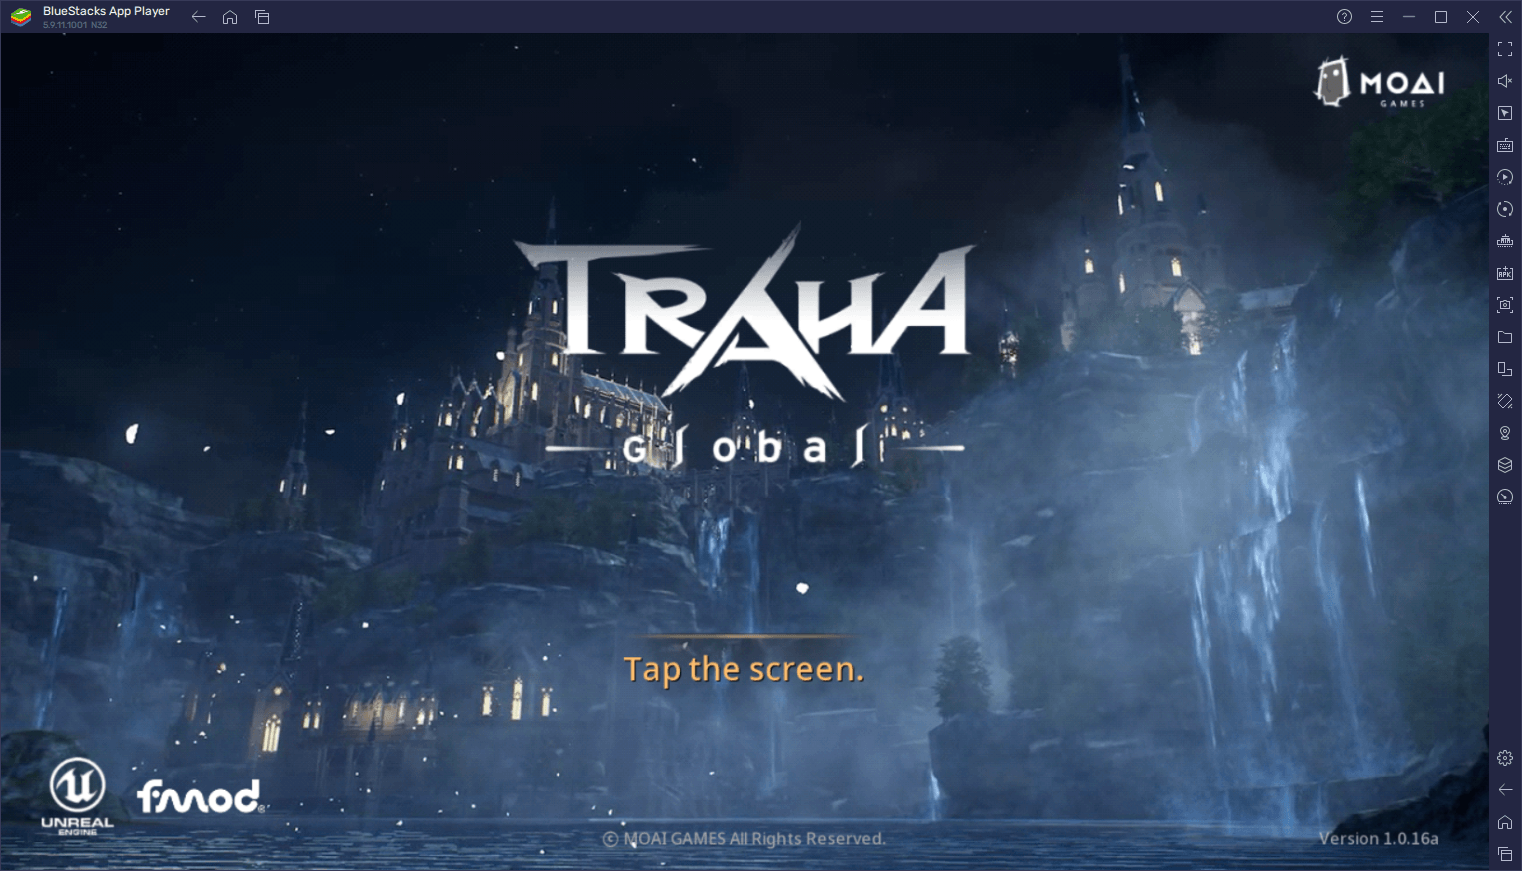 TRAHA Global auf PC - Alles, was du vom Start dieses innovativen MMORPGs erwarten kannst